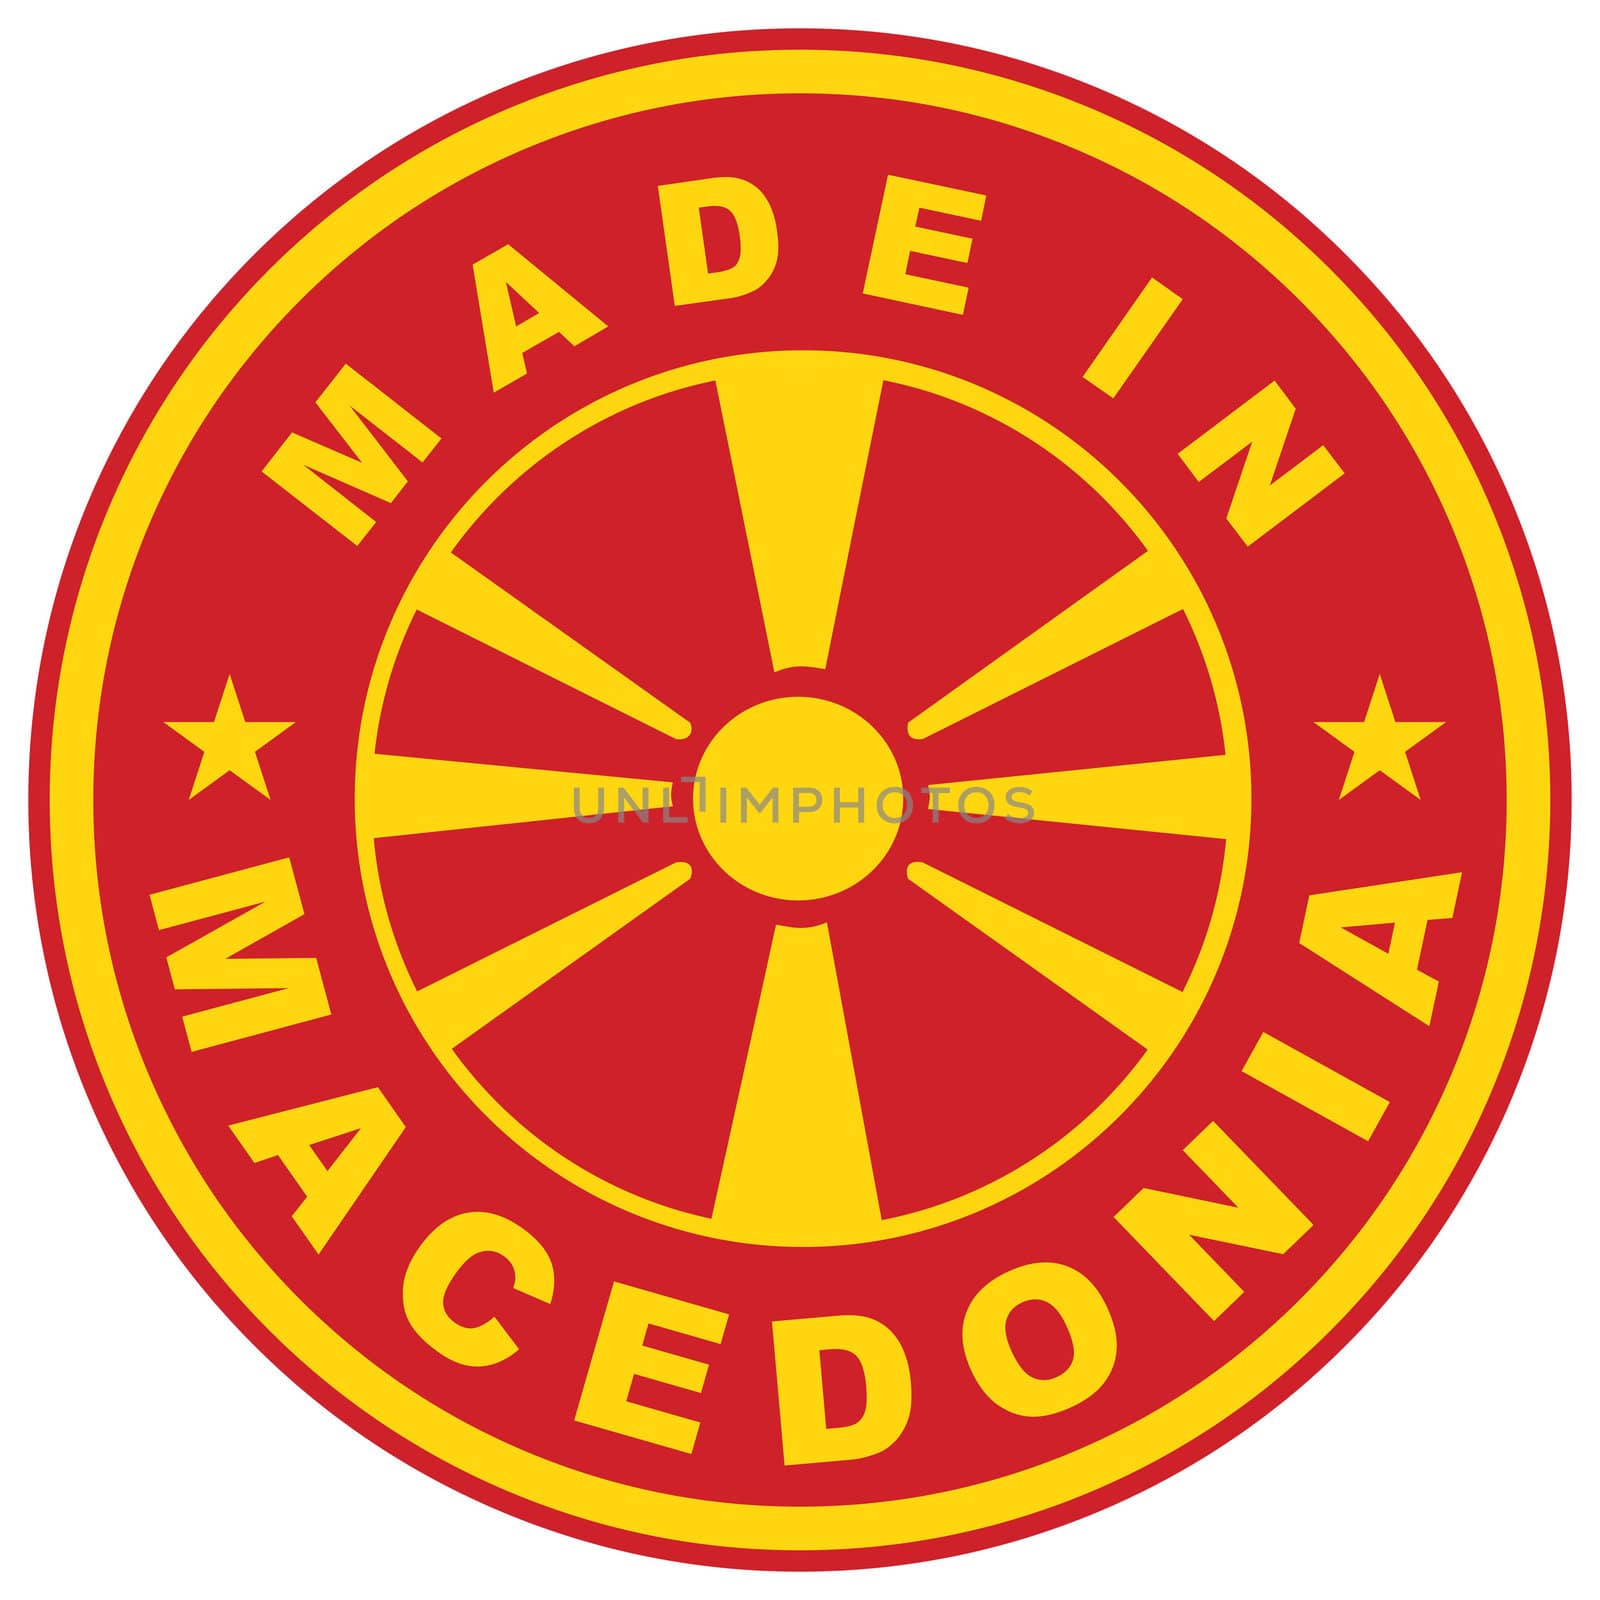 made in macedonia by tony4urban